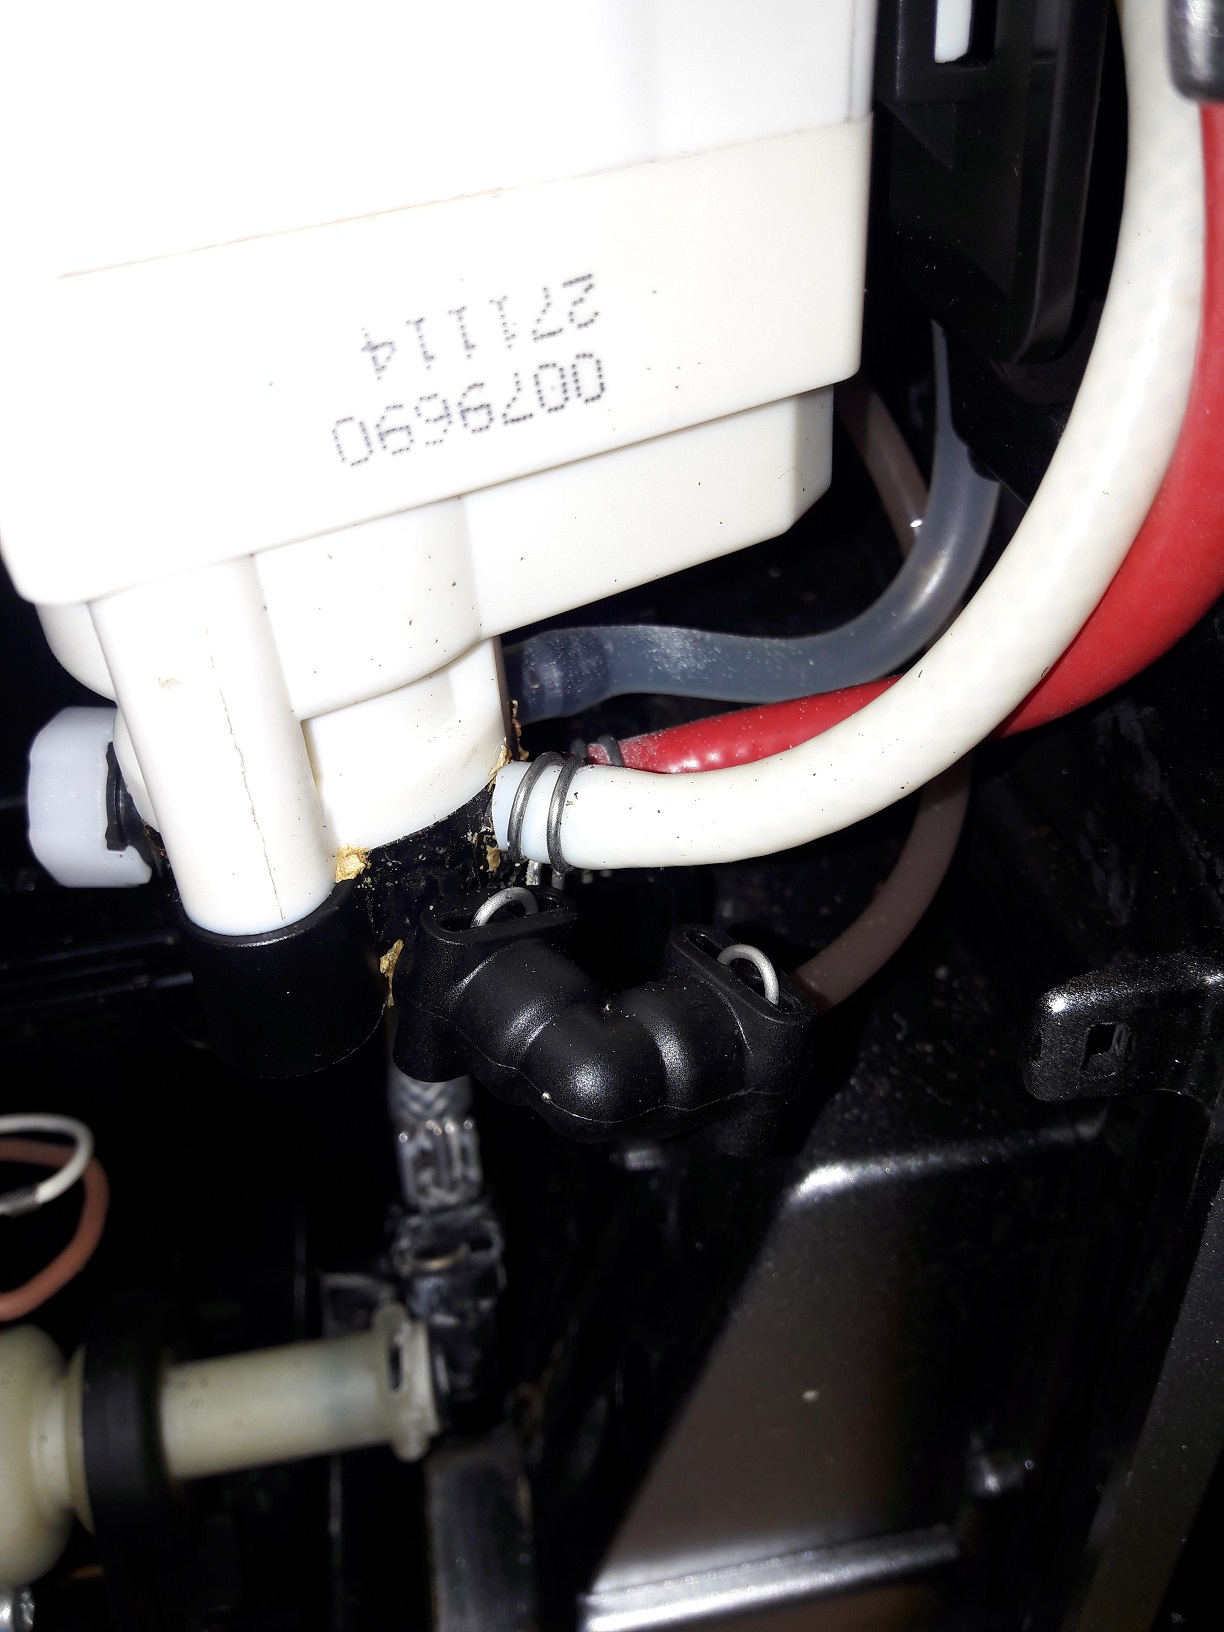 Melitta Caffeo CI E 970 - 101 - Keramikventil defekt und erfolgreich  repariert - Melitta • Reparatur • Wartung • Pflege - Kaffeevollautomaten  Forum rund um die Reparatur & Pflege